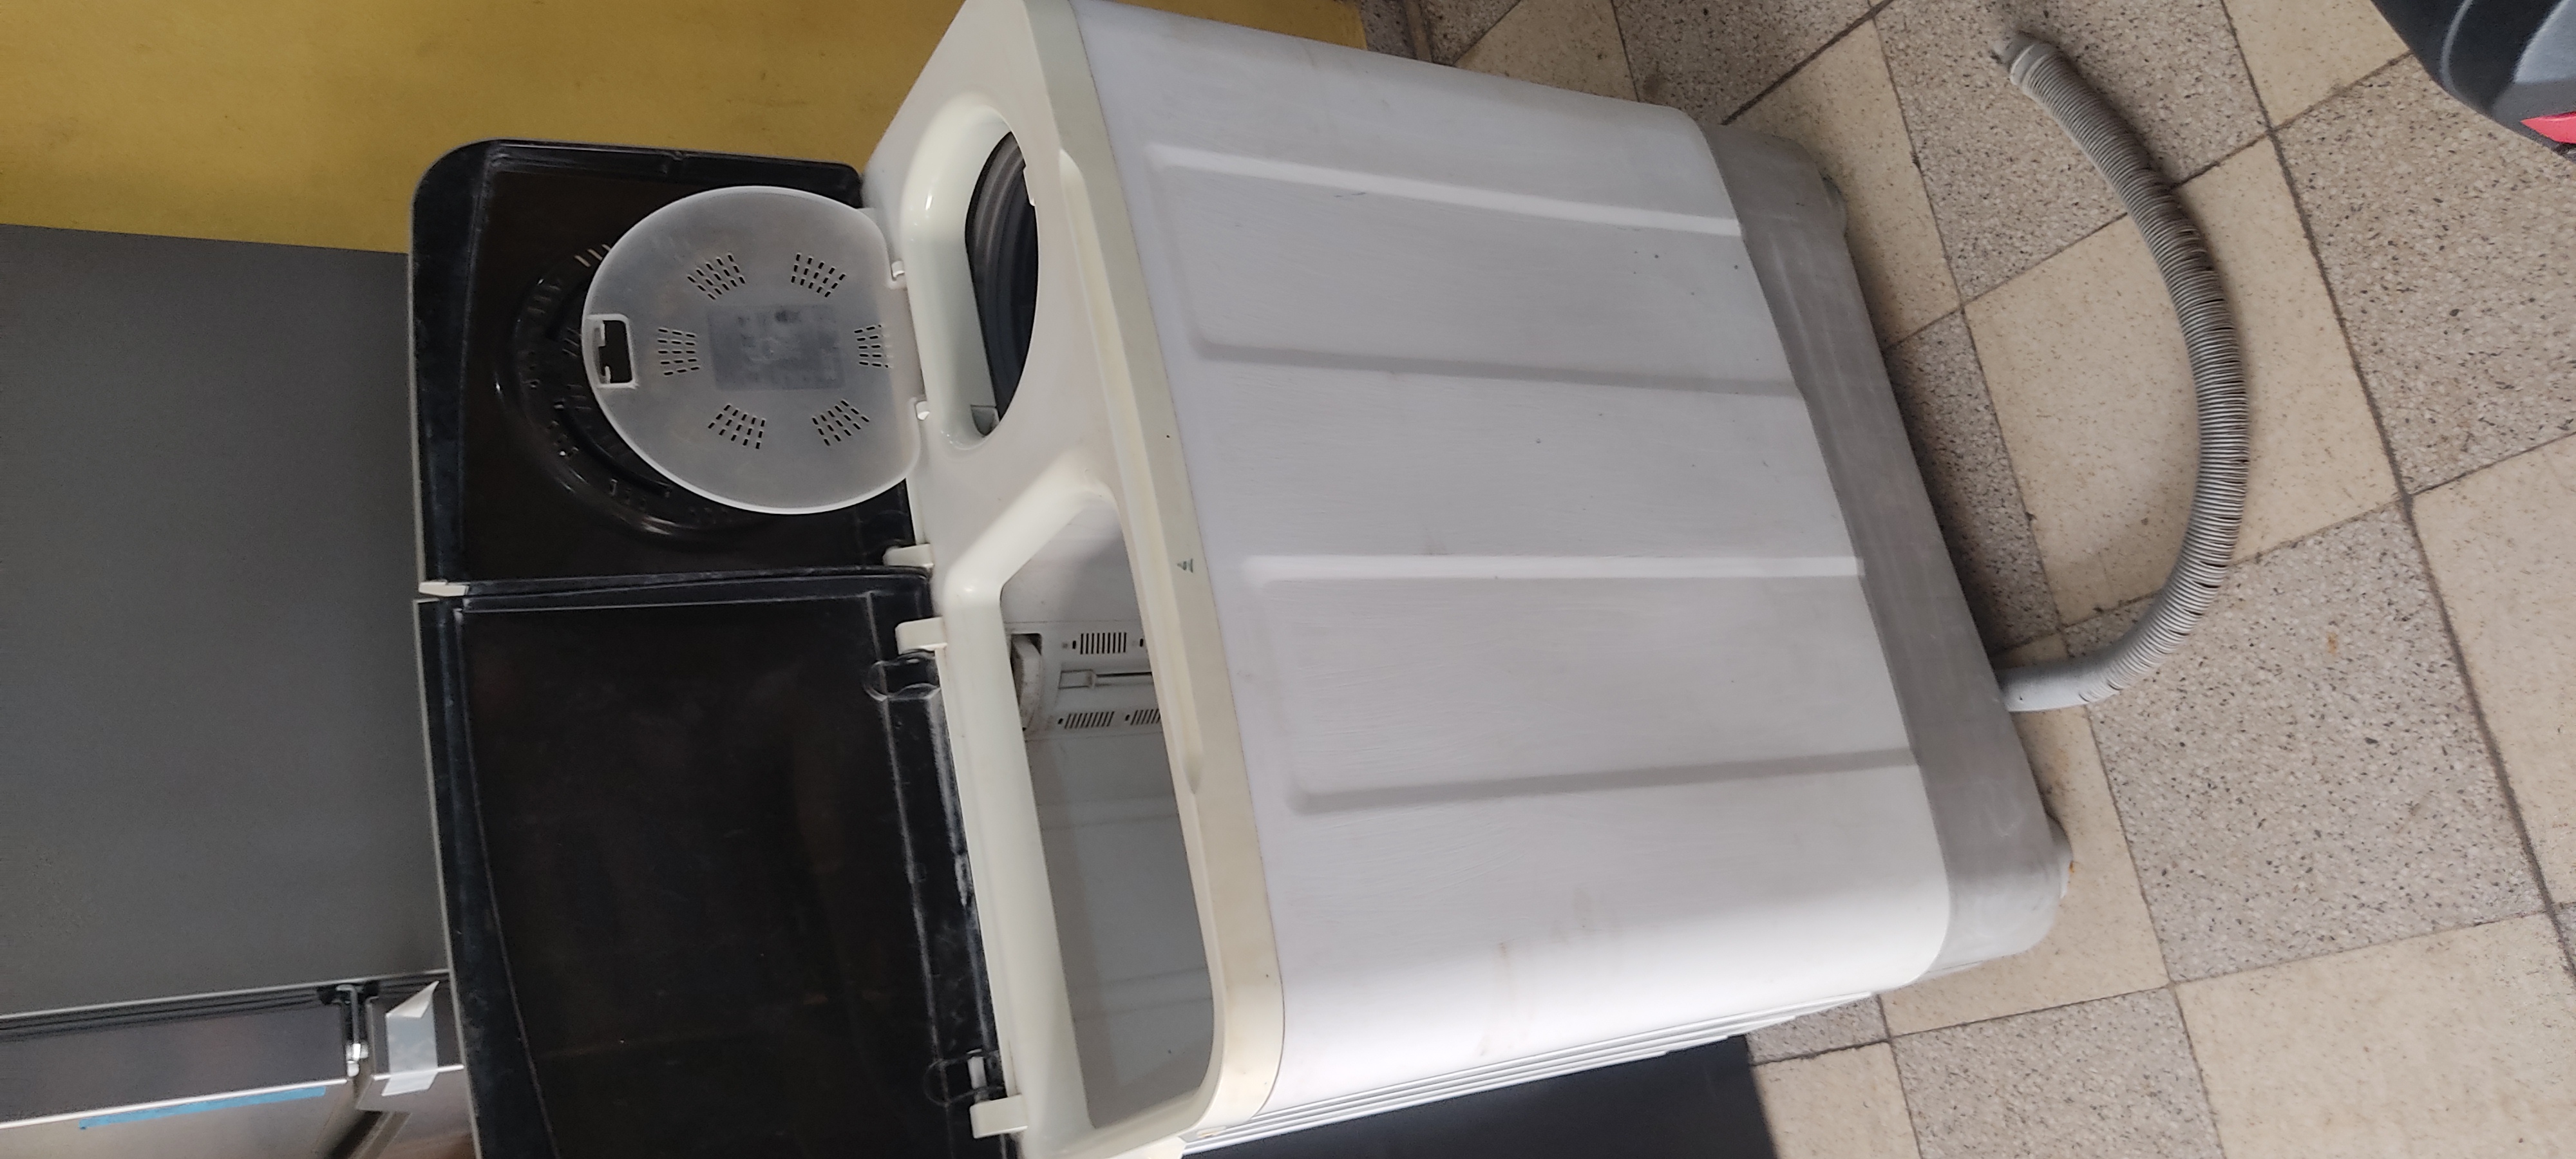 electrodomesticos - lavadora cetron 13 kilos 2